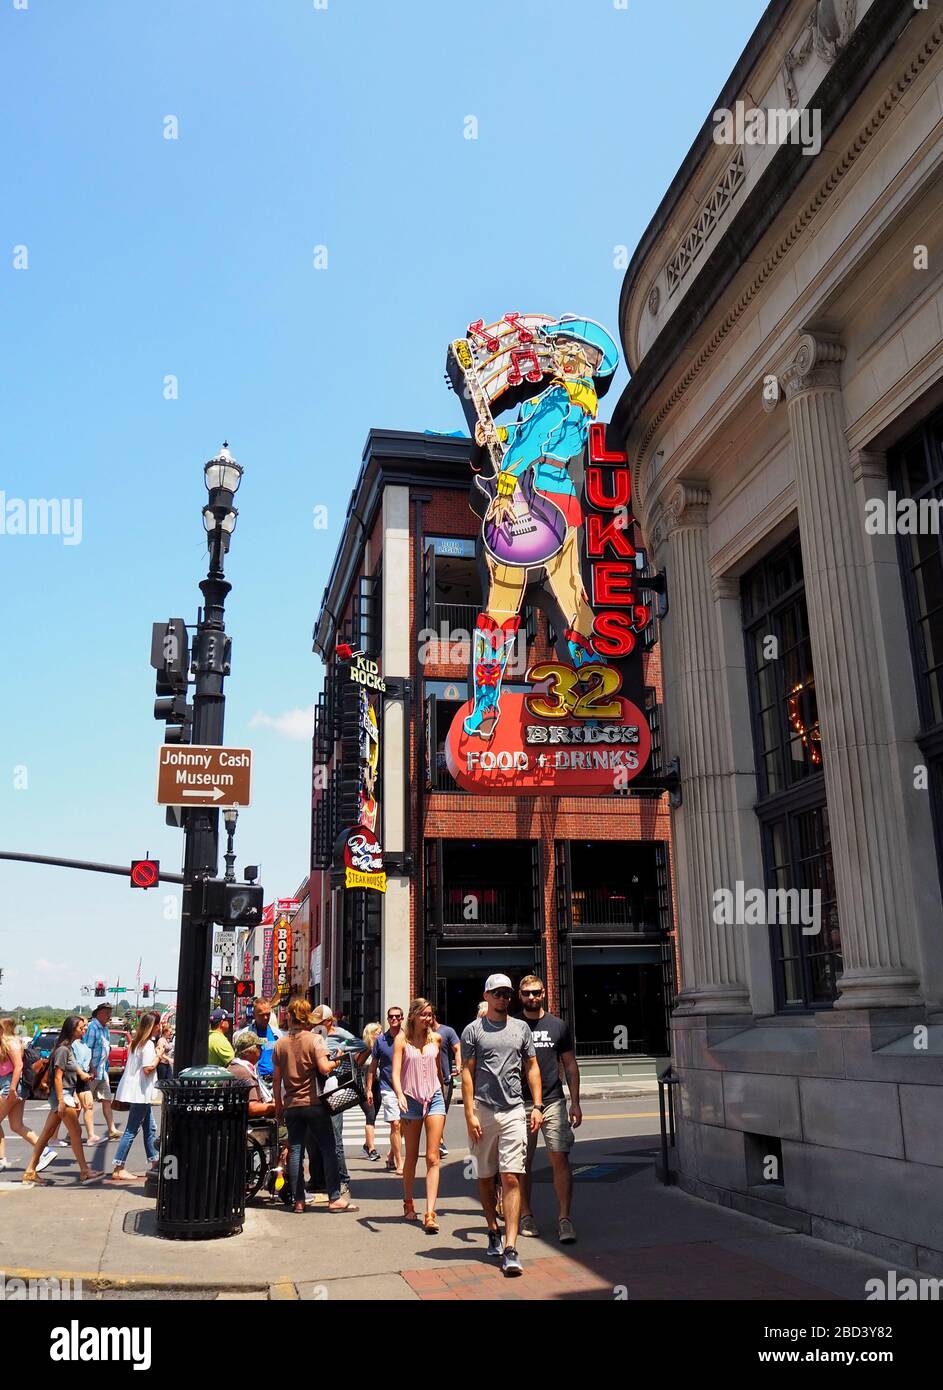 NASHVILLE, TENNESSEE - 25 LUGLIO 2019: Il colorato cartello al neon per il cantante e cantautore di campagna Luke Bryan's bar e ristorante, sopra un affollato marciapiede Foto Stock